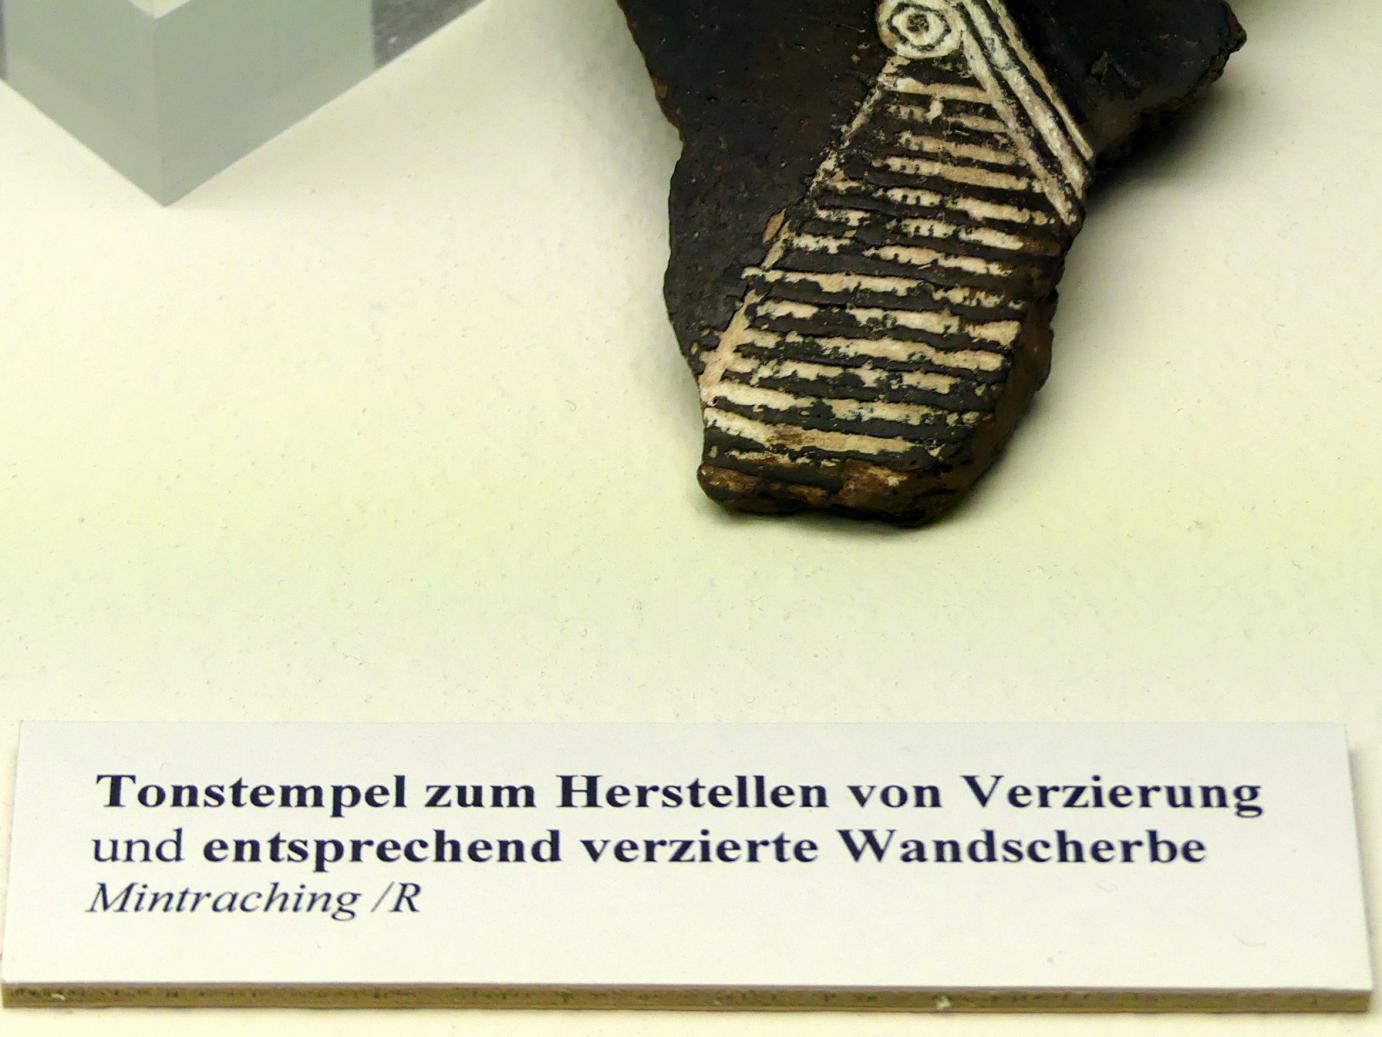 Verzierte Wandscherbe, Hallstattzeit, 700 - 200 v. Chr., Bild 2/2